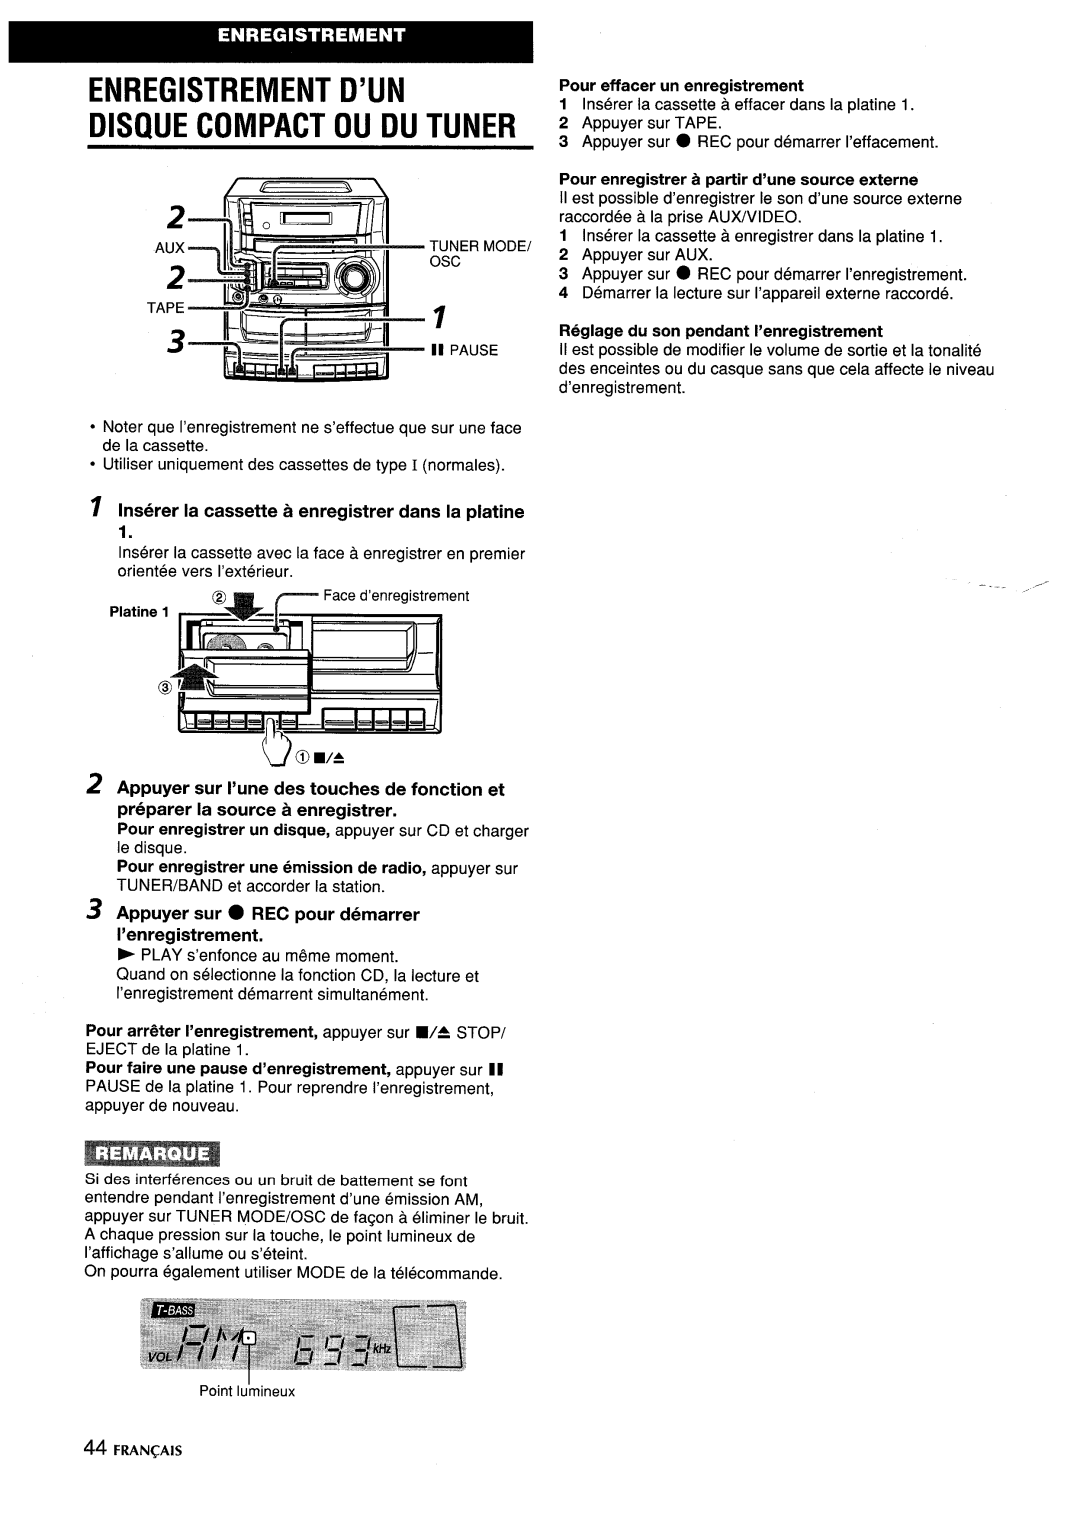 Aiwa CA-DW635 manual ~~-. !5’3 /A ’44““, Enregistrement D’Un Disque Compact Ou Du Tuner, Pour effacer un enregistrement 